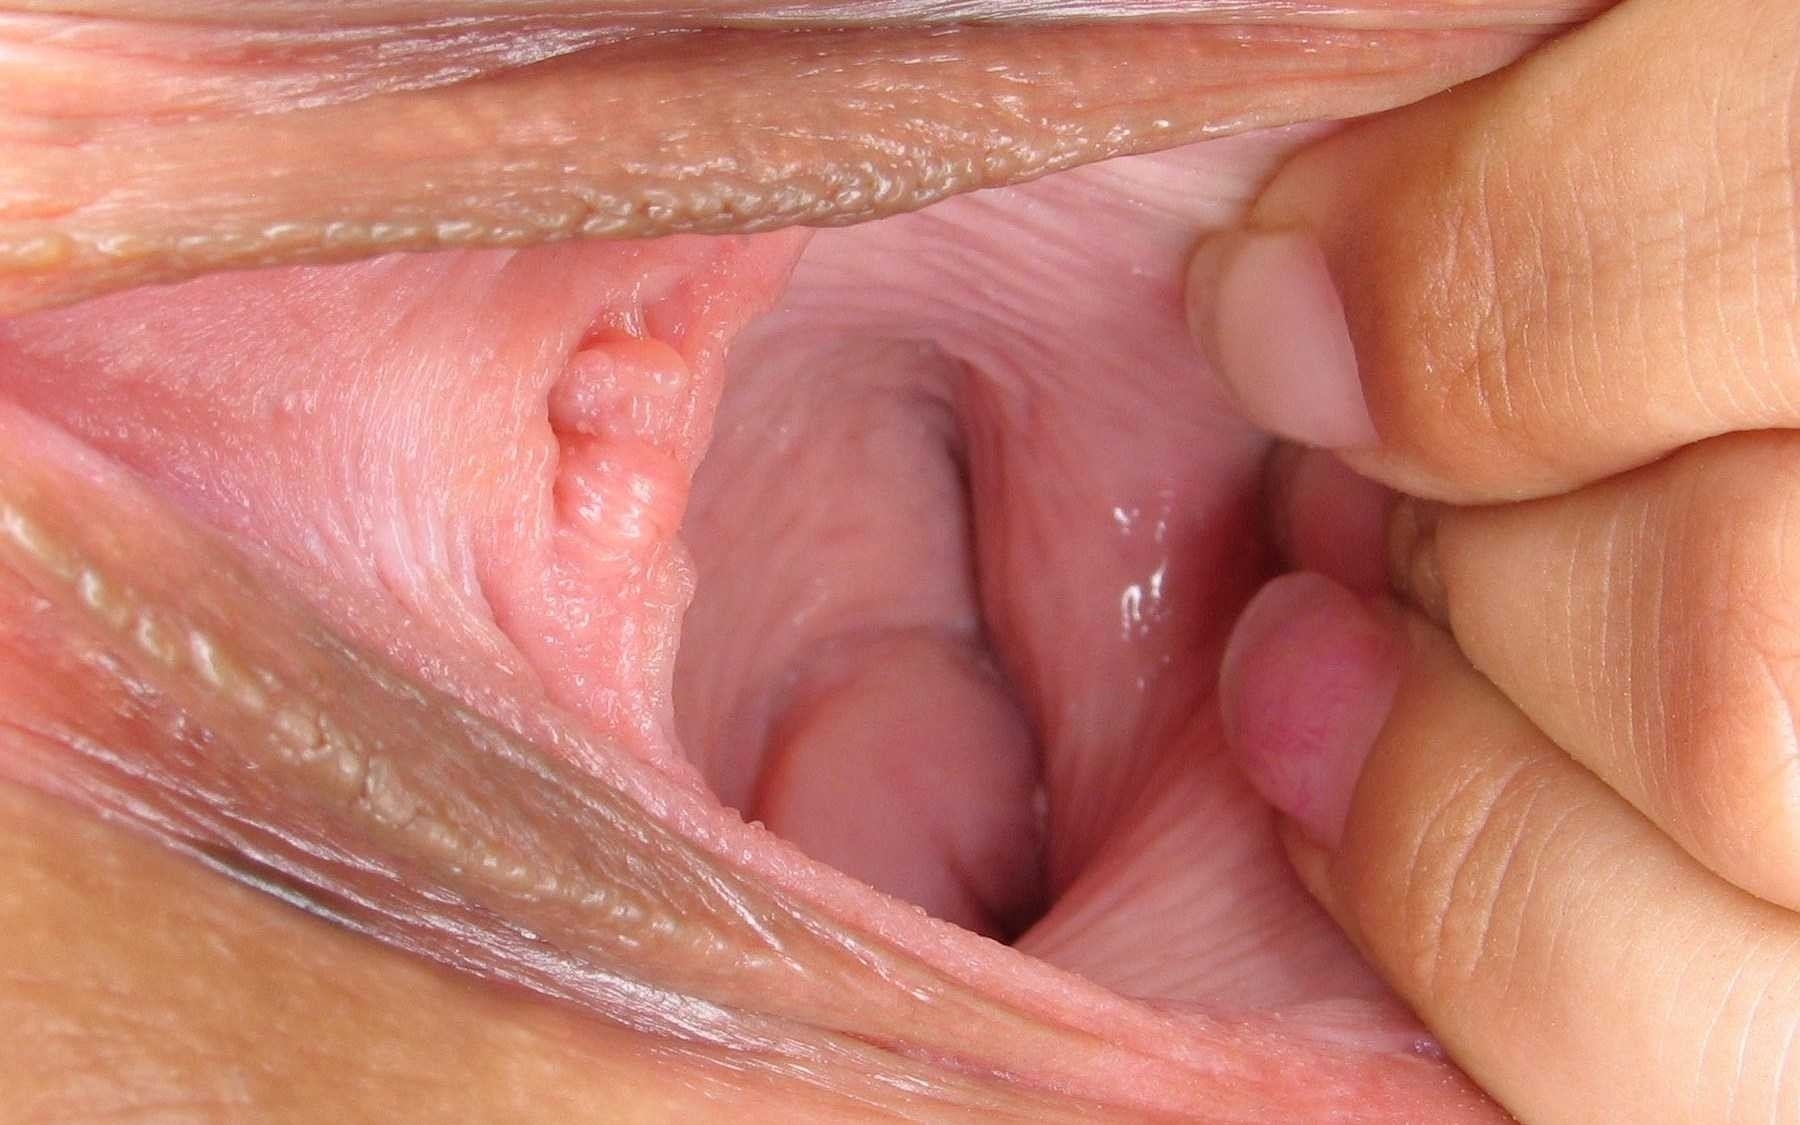 крупно внутри влагалища сперма фото 28